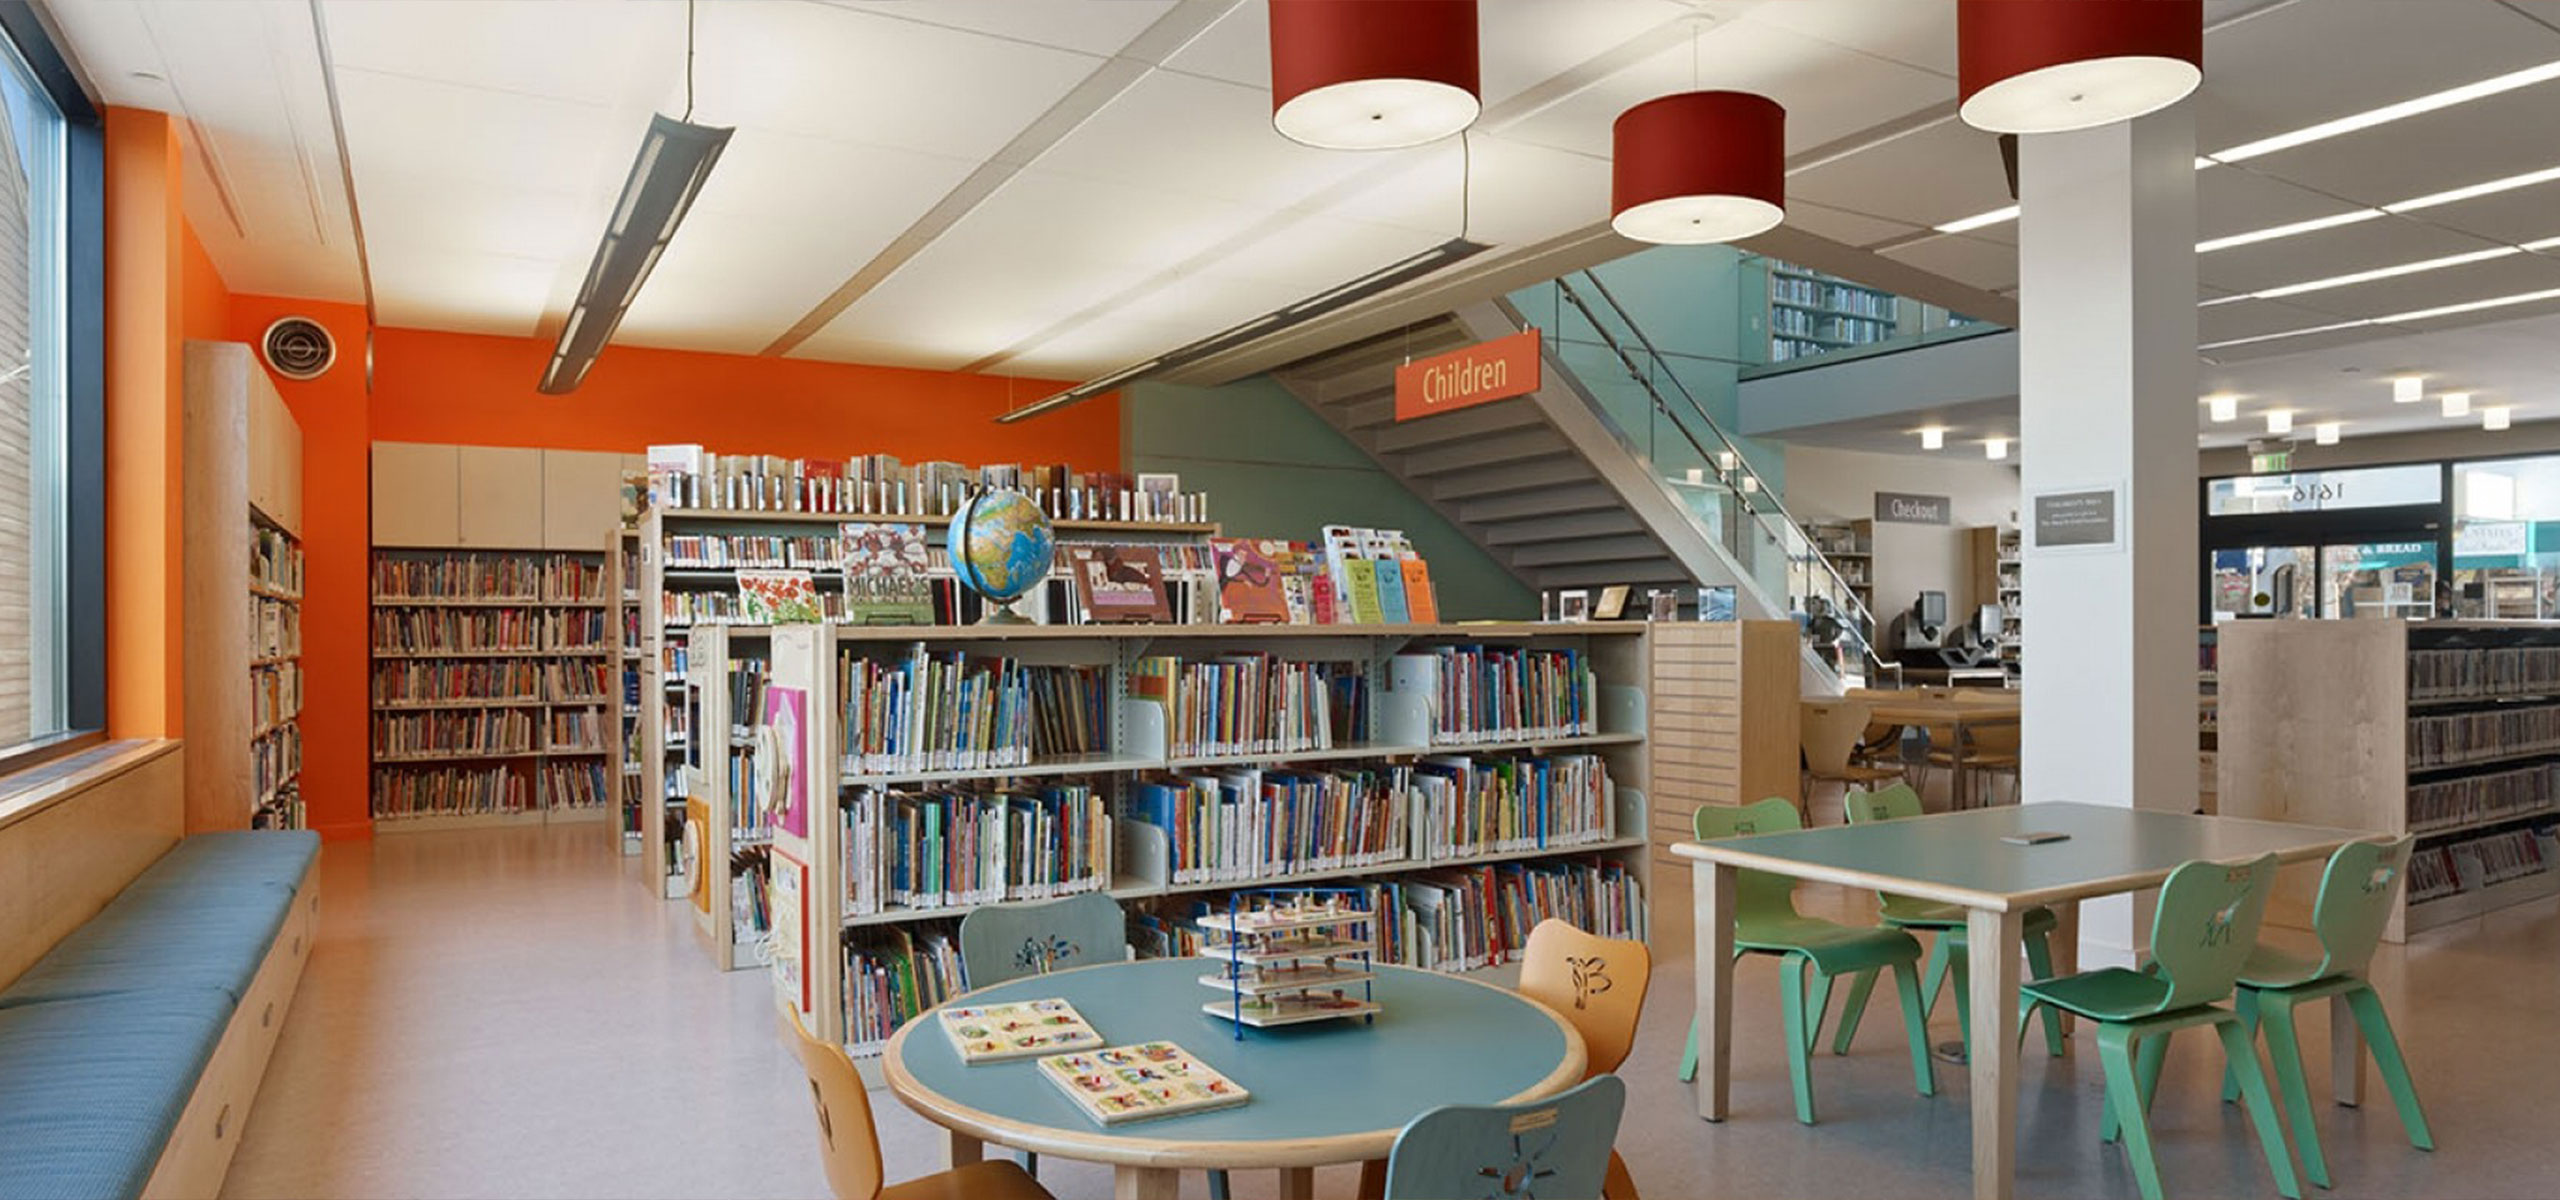 The Interior of the SF Public library - Potrero Branch